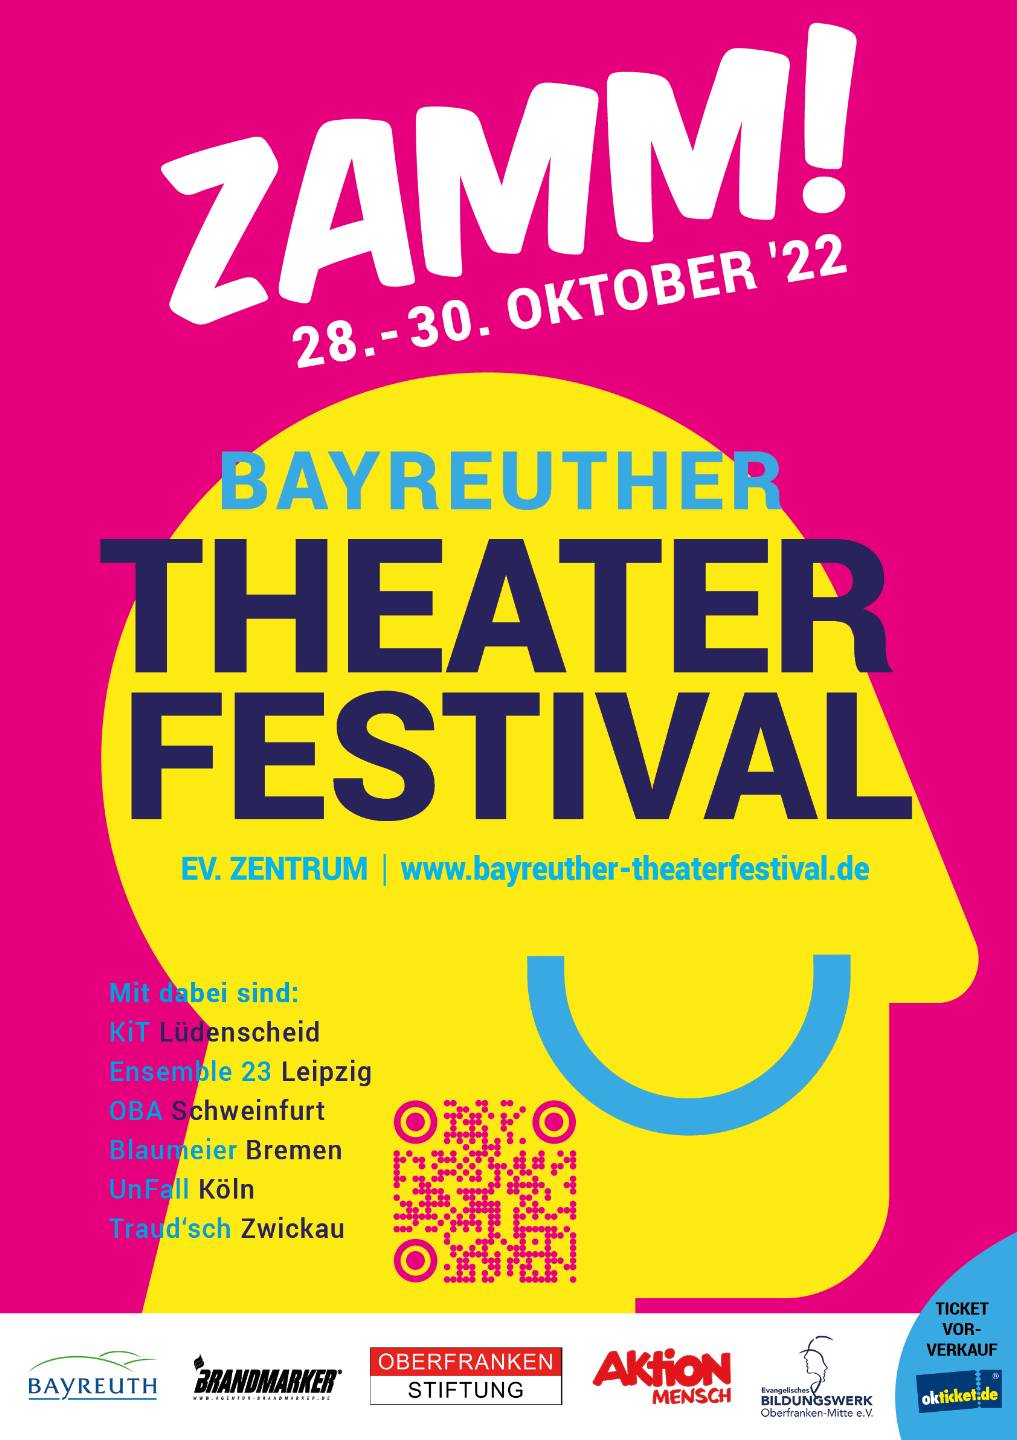 Version eines Plakats des Bayreuther Theater Festivals ZAMM! aus dem Jahr 2022.